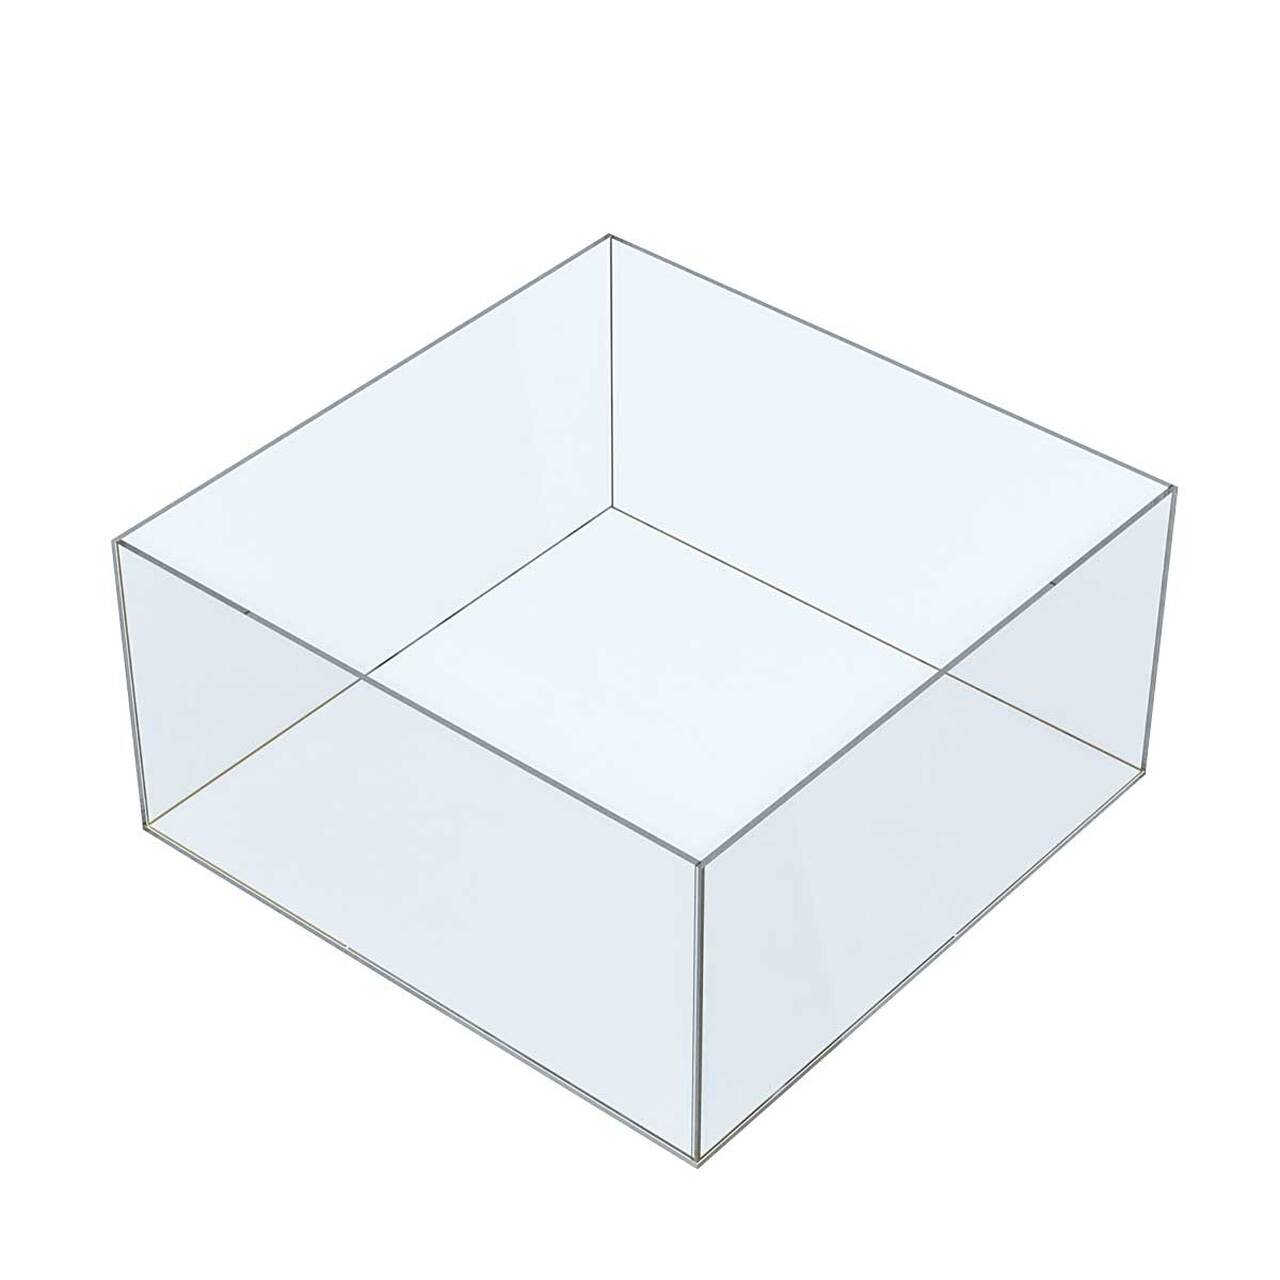 Cutie organizatoare simplă, din plexiglas, dimensiuni la cerere